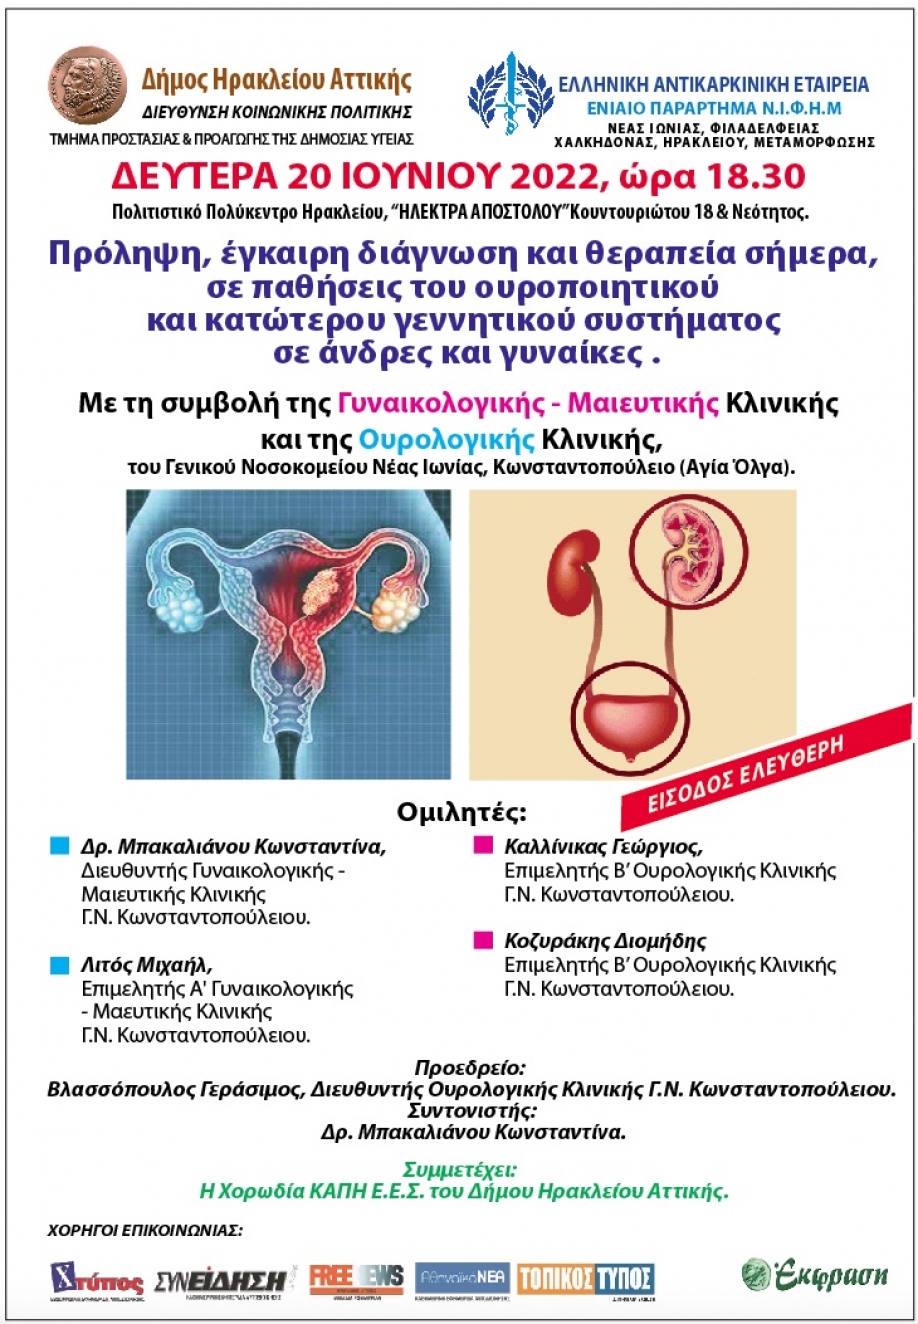 Ουροποιητικό σύστημα - Πρόληψη,Διάγνωση και Έγκαιρη Θεραπεία: Ημερίδα στο Ηράκλειο Αττικής